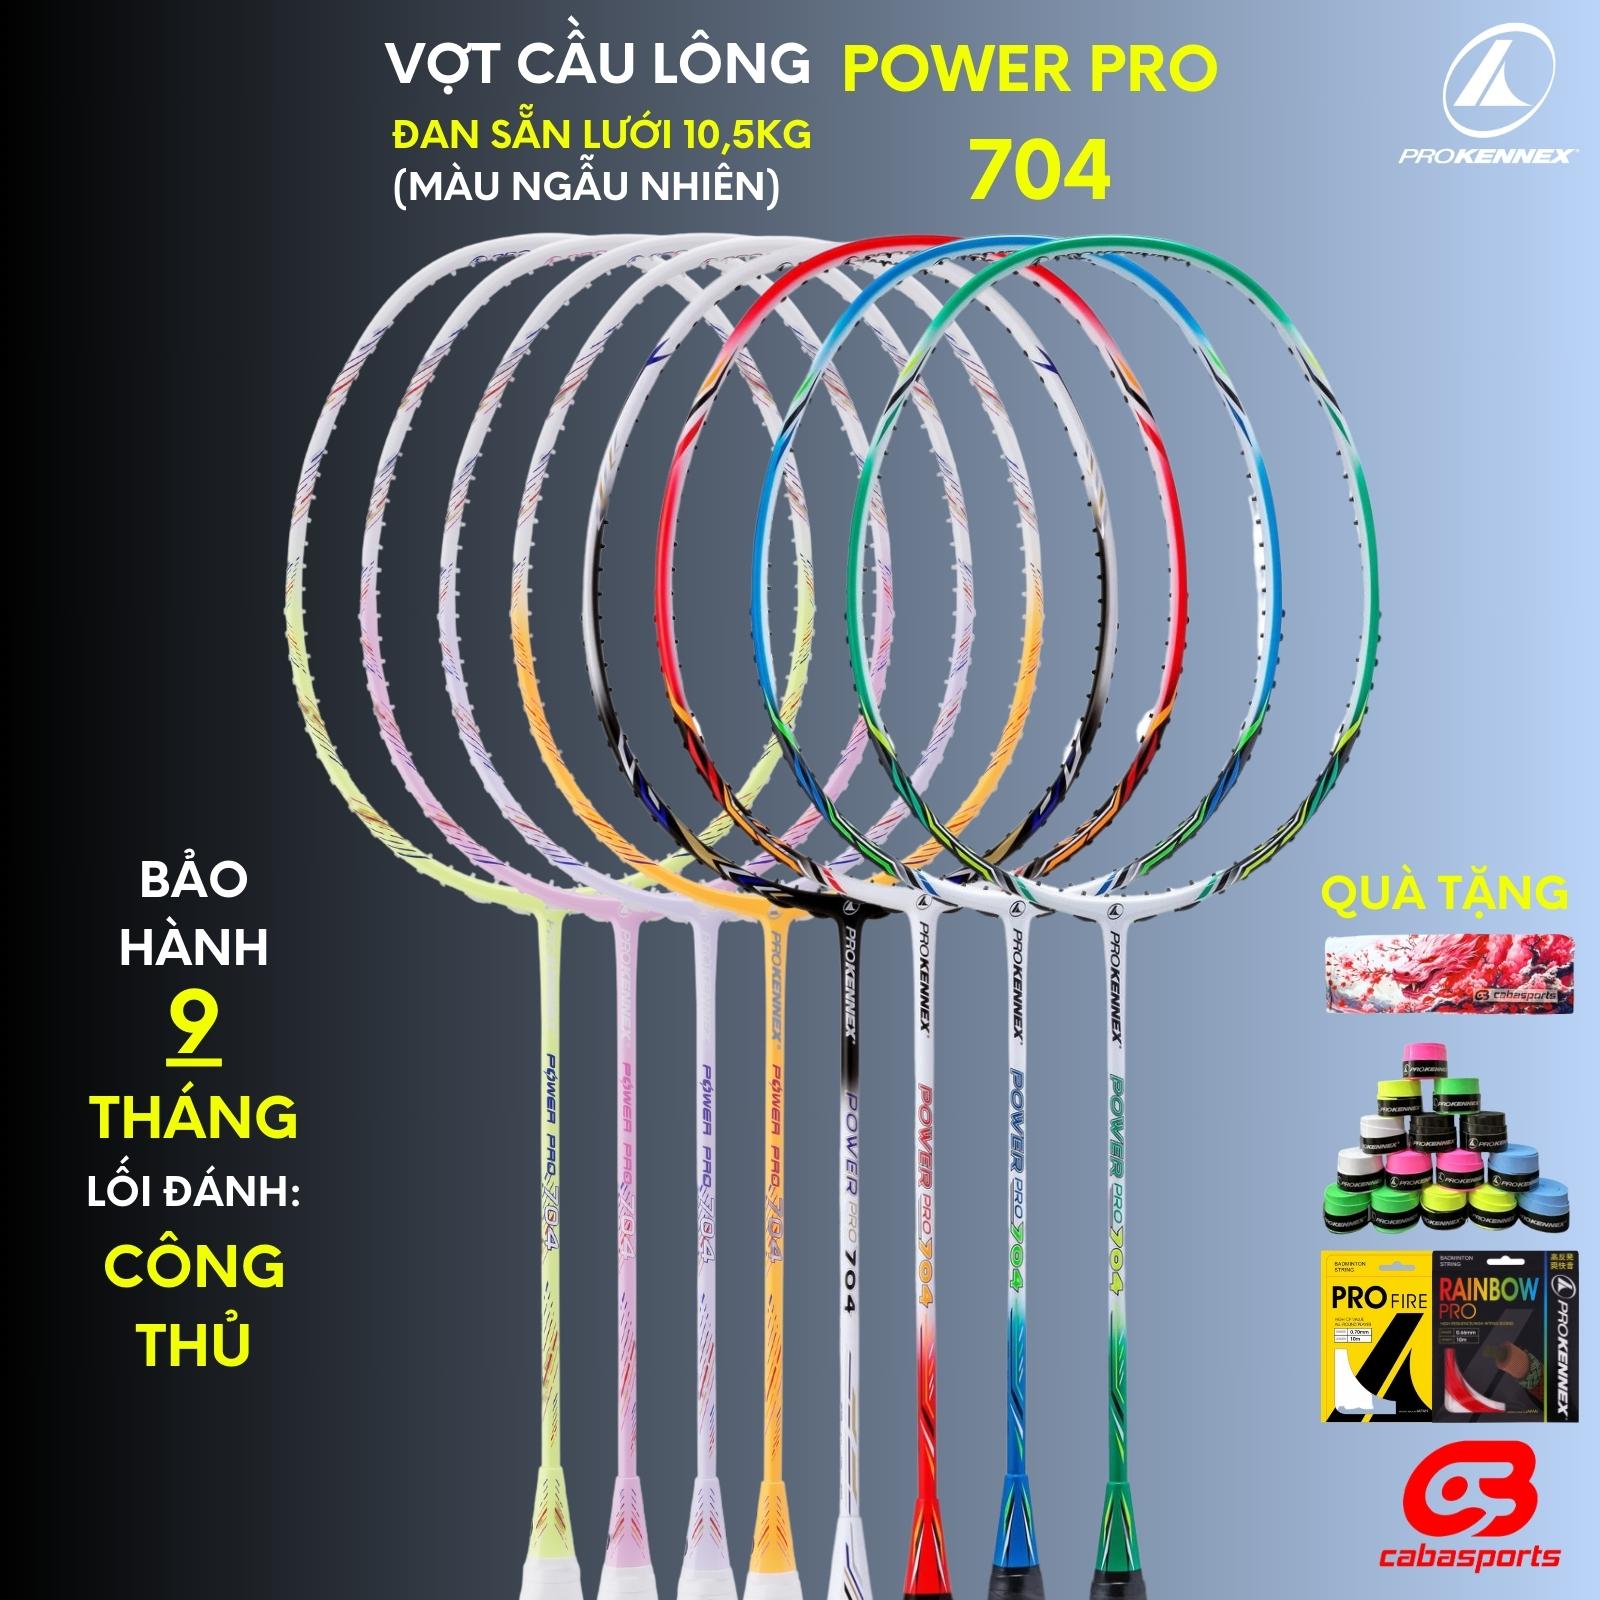 Vợt cầu lông Prokennex Power Pro 704 đã đan dây 10.5kg, vợt carbon công thủ toàn diện Bảo hành 9 tháng Kèm Quà Tặng Quấn cán (Ngẫu nhiên màu lưới và quấn cán)